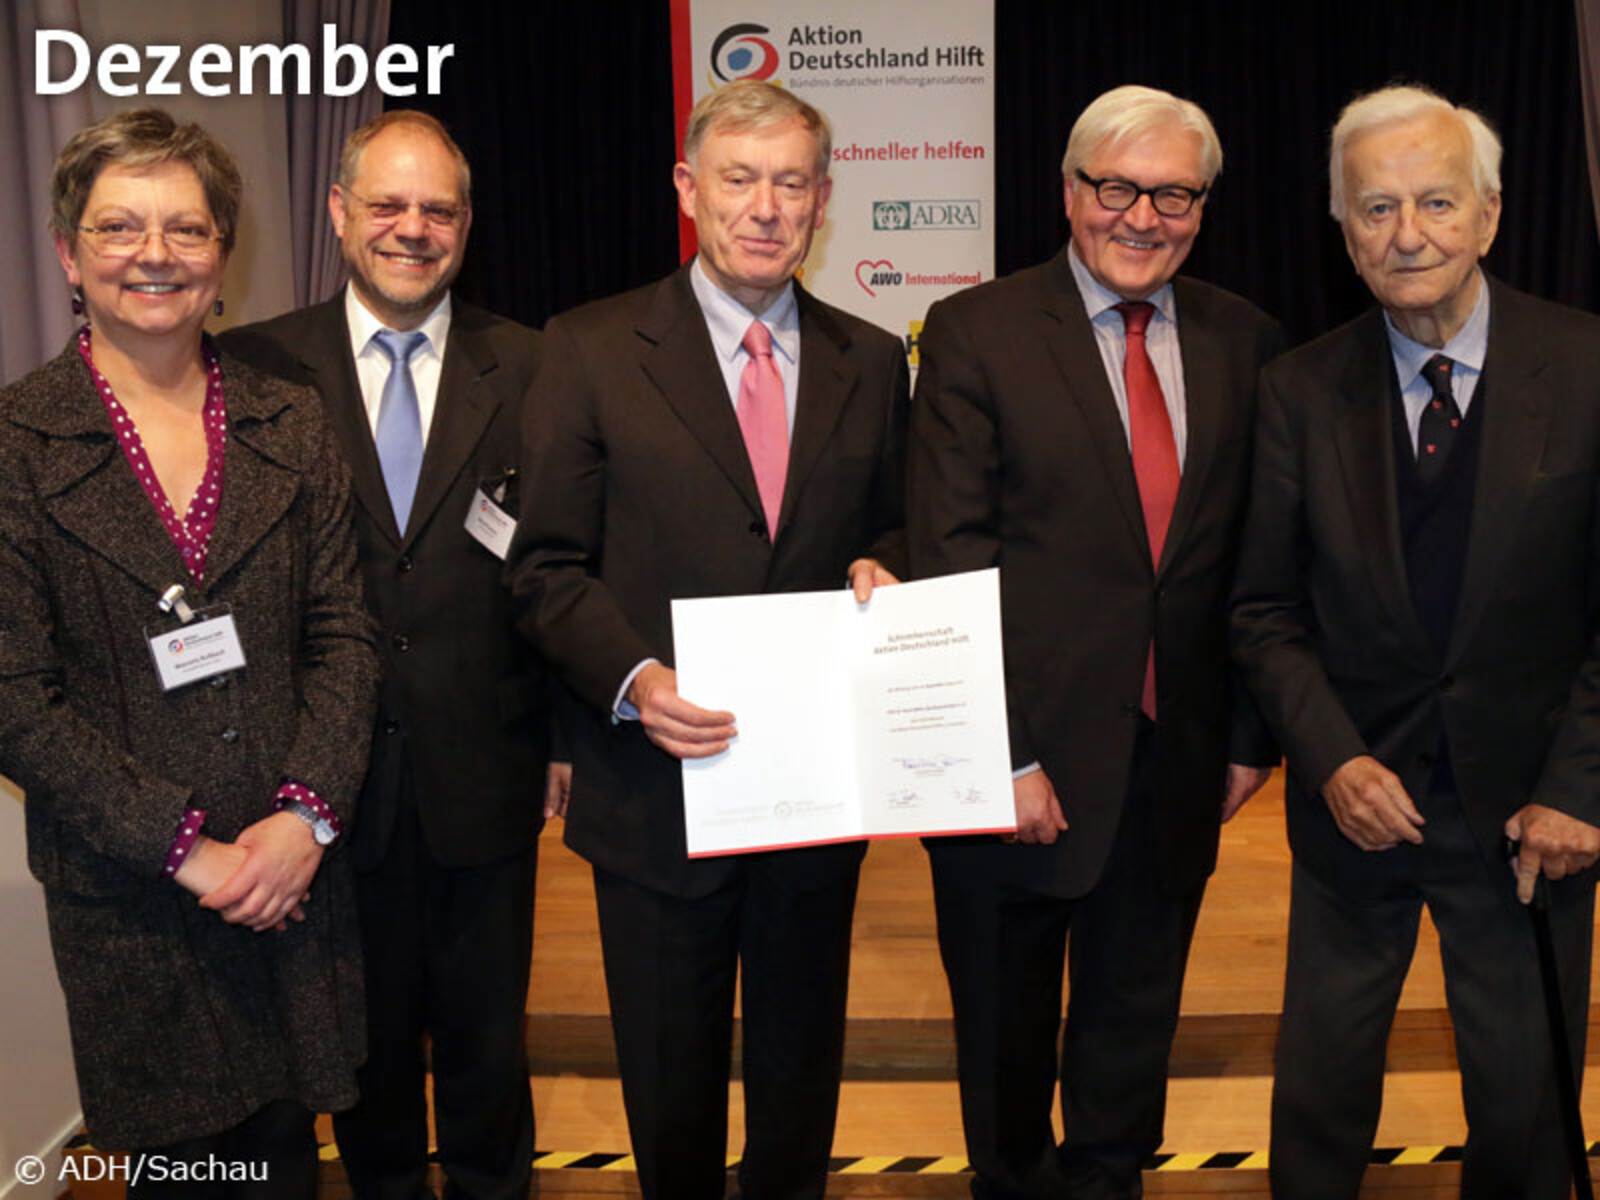 10. Dezember – Bundespräsident a.D. Prof. Dr. Horst Köhler hat die Schirmherrschaft über Aktion Deutschland Hilft übernommen.